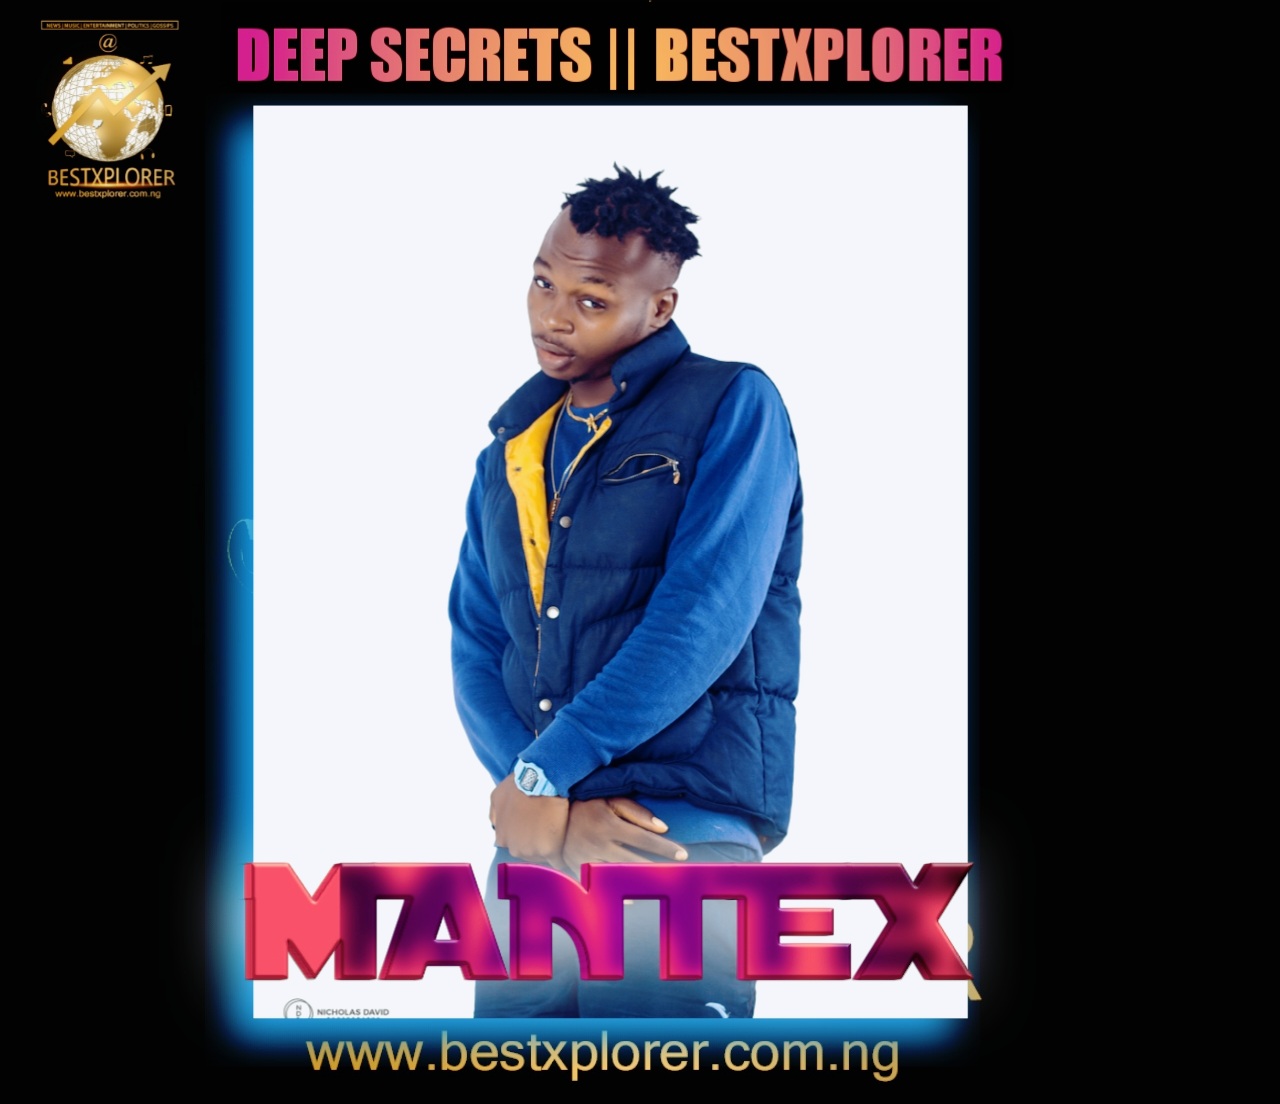 Deep Secrets: Meet Mantex And Know His Secrets